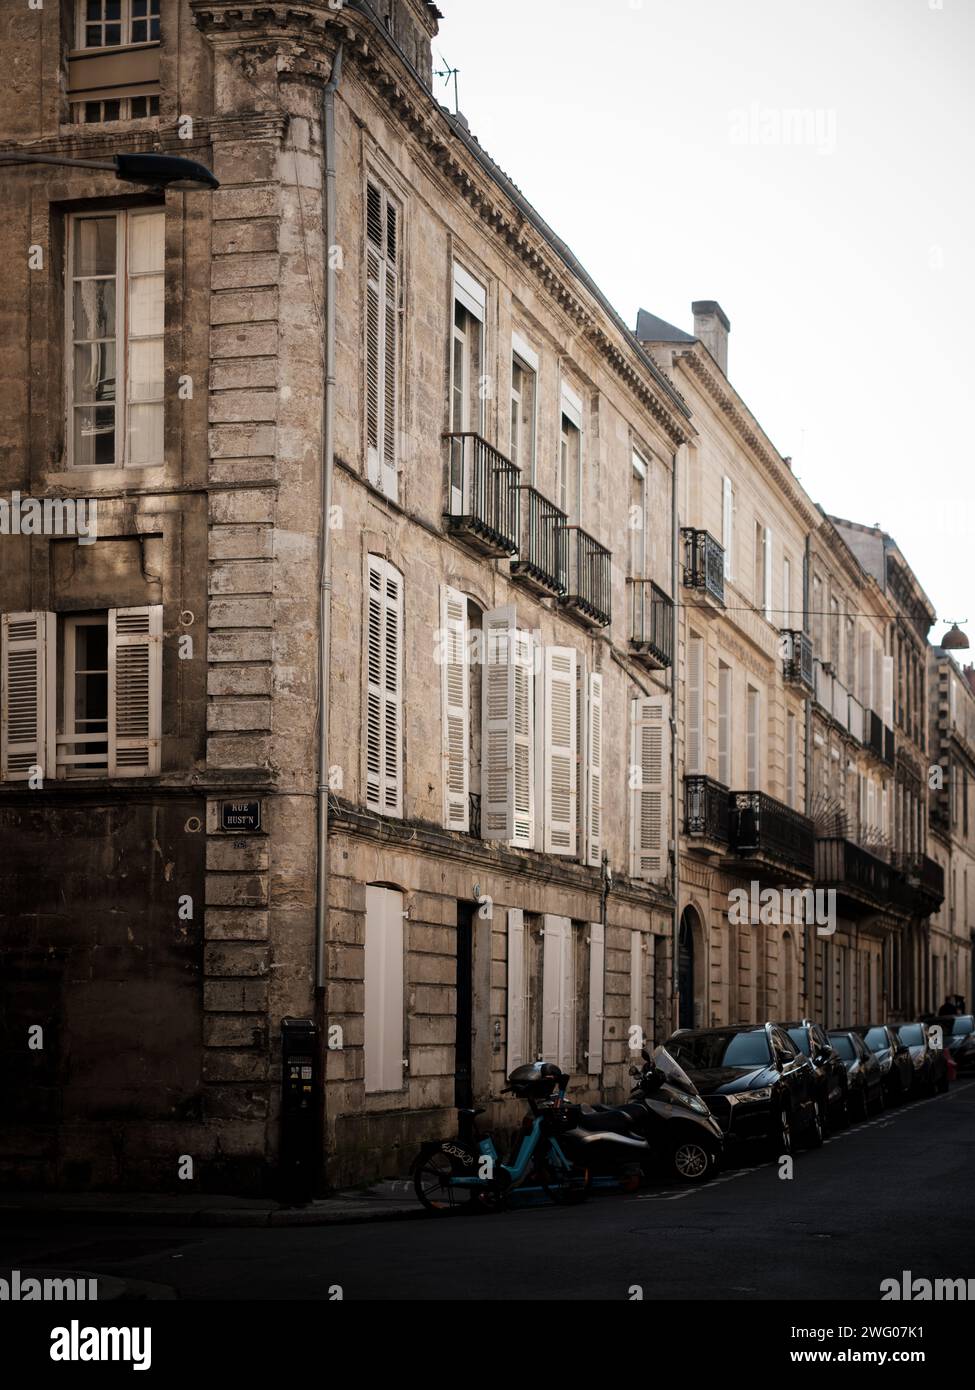 La vie quotidienne vue dans les rues de Bordeaux par une journée ensoleillée d'hiver. Connue comme la capitale mondiale du vin, Bordeaux est la sixième plus grande ville de F Banque D'Images